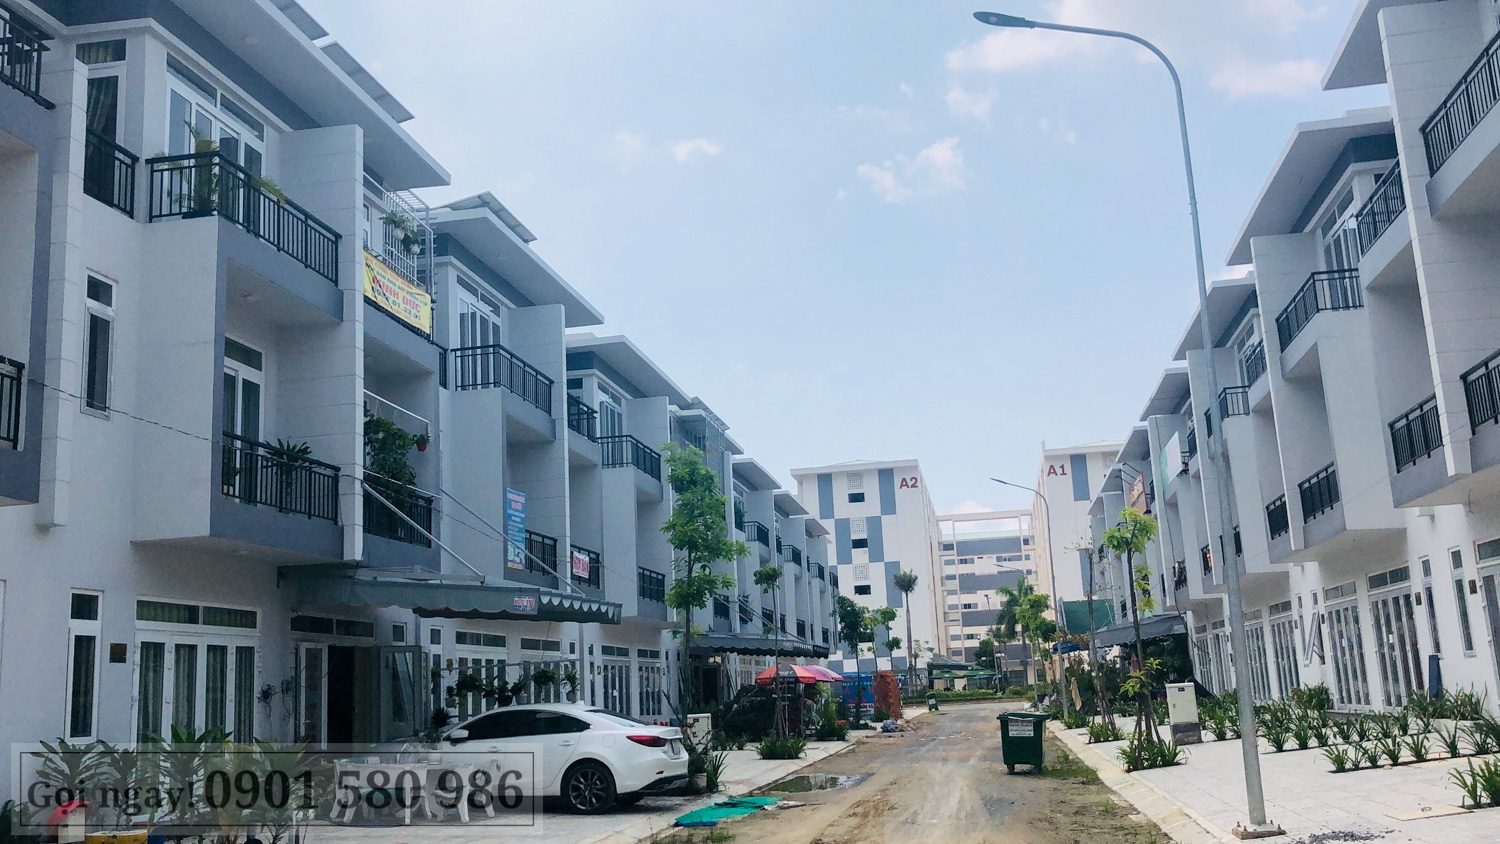 Cập nhật tiến độ dự án Phúc An City – Trần Anh Long An tháng 10/2019